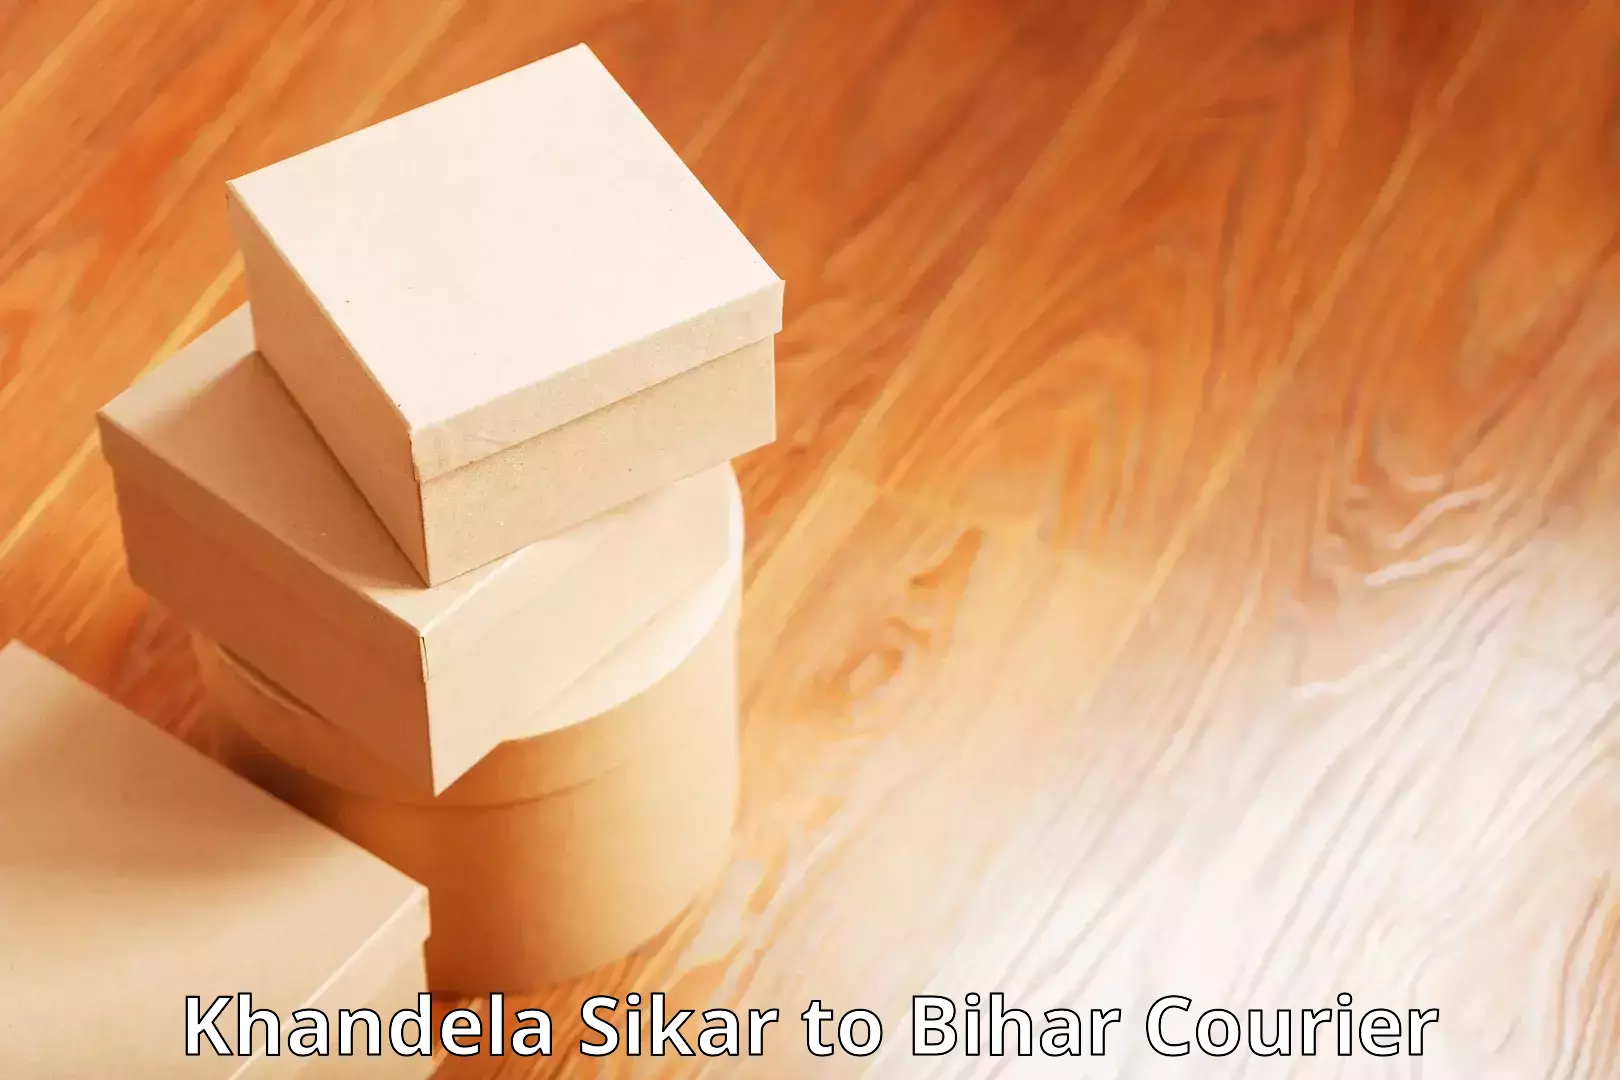 High value parcel delivery Khandela Sikar to Munger